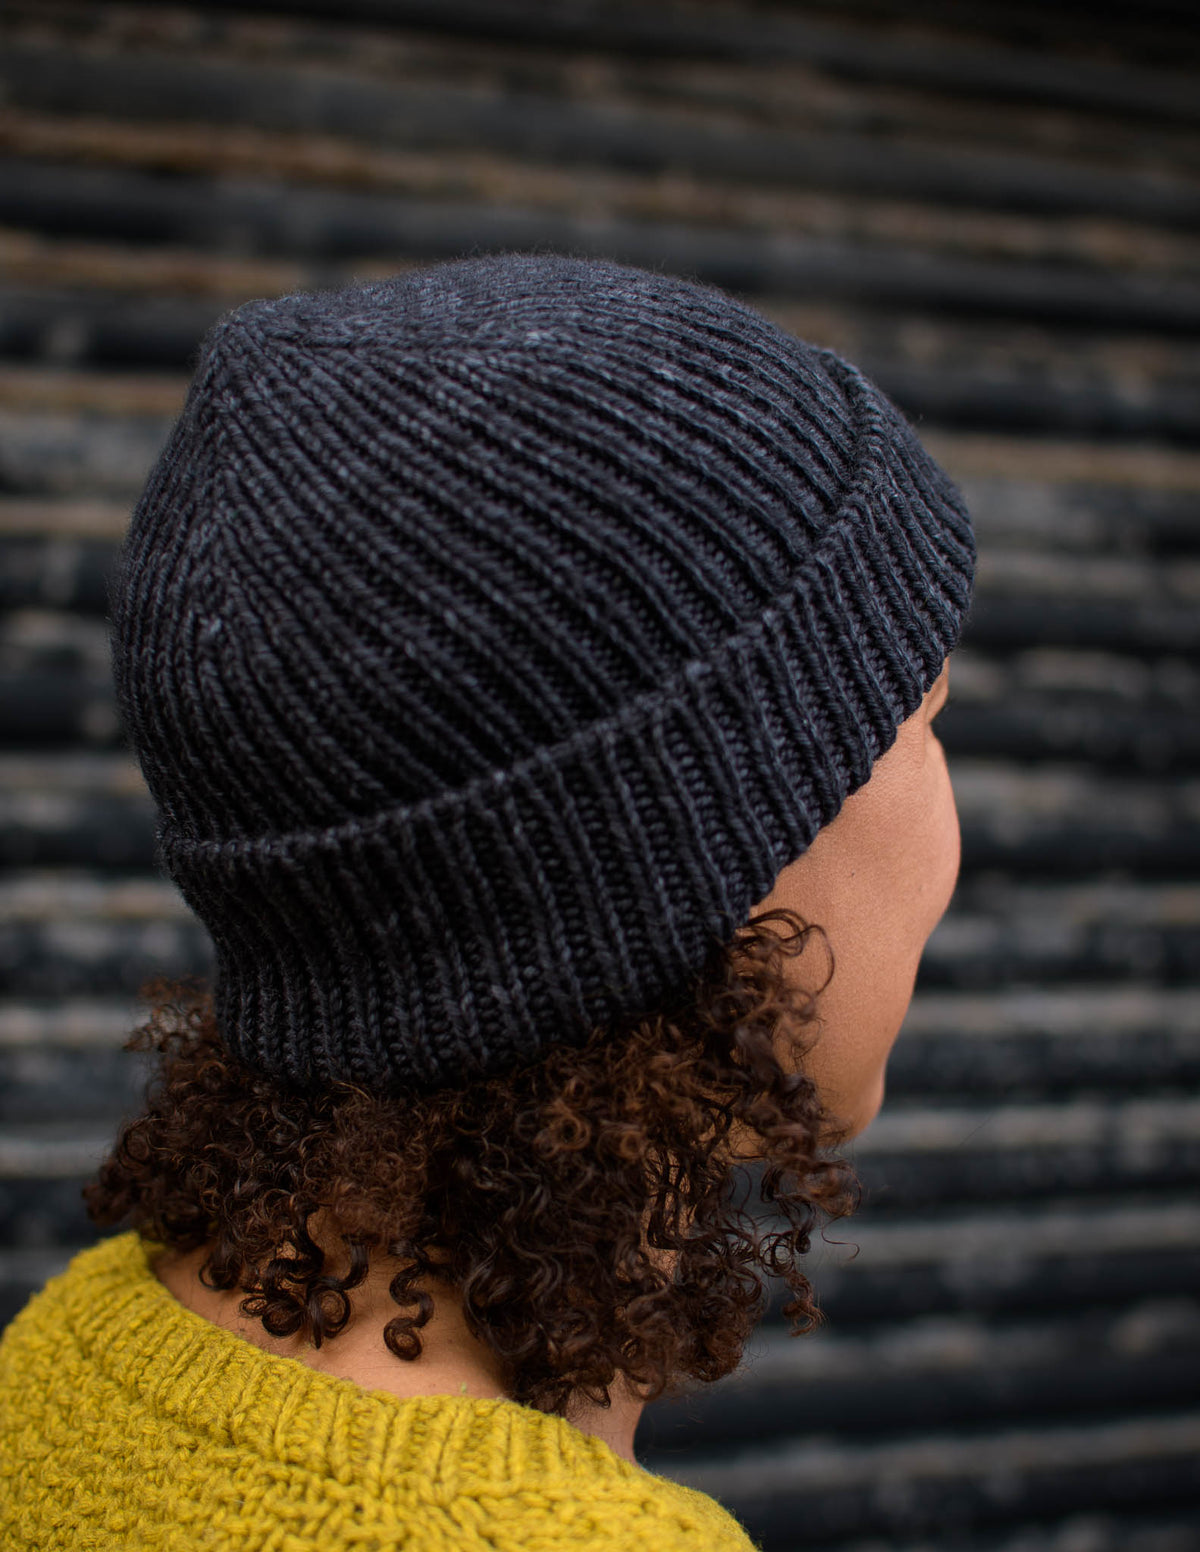 Squishy Stripes Beanie Tutorial, Free Beginner Hat Pattern